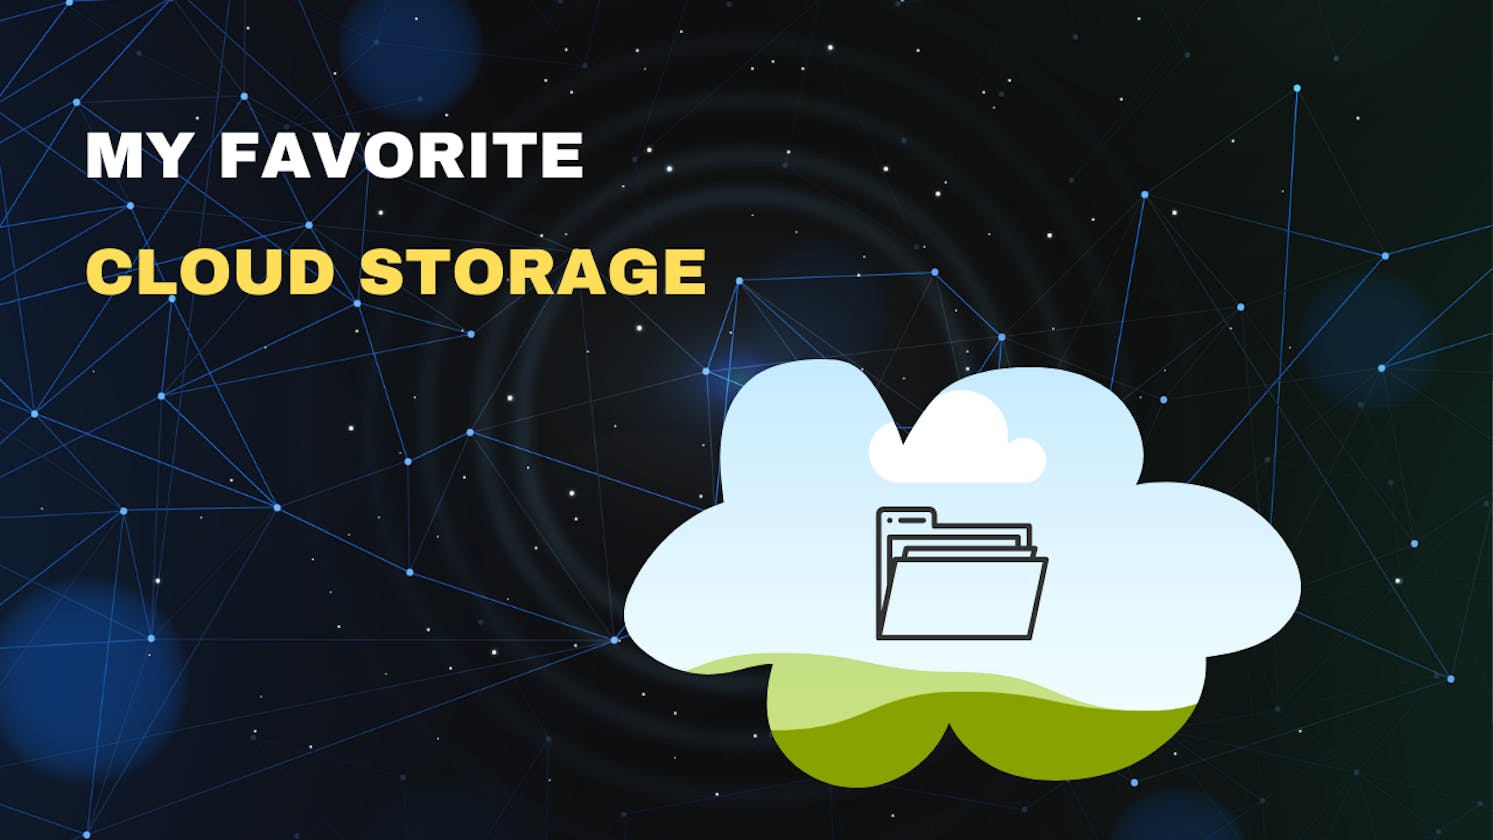 My favorite cloud storage